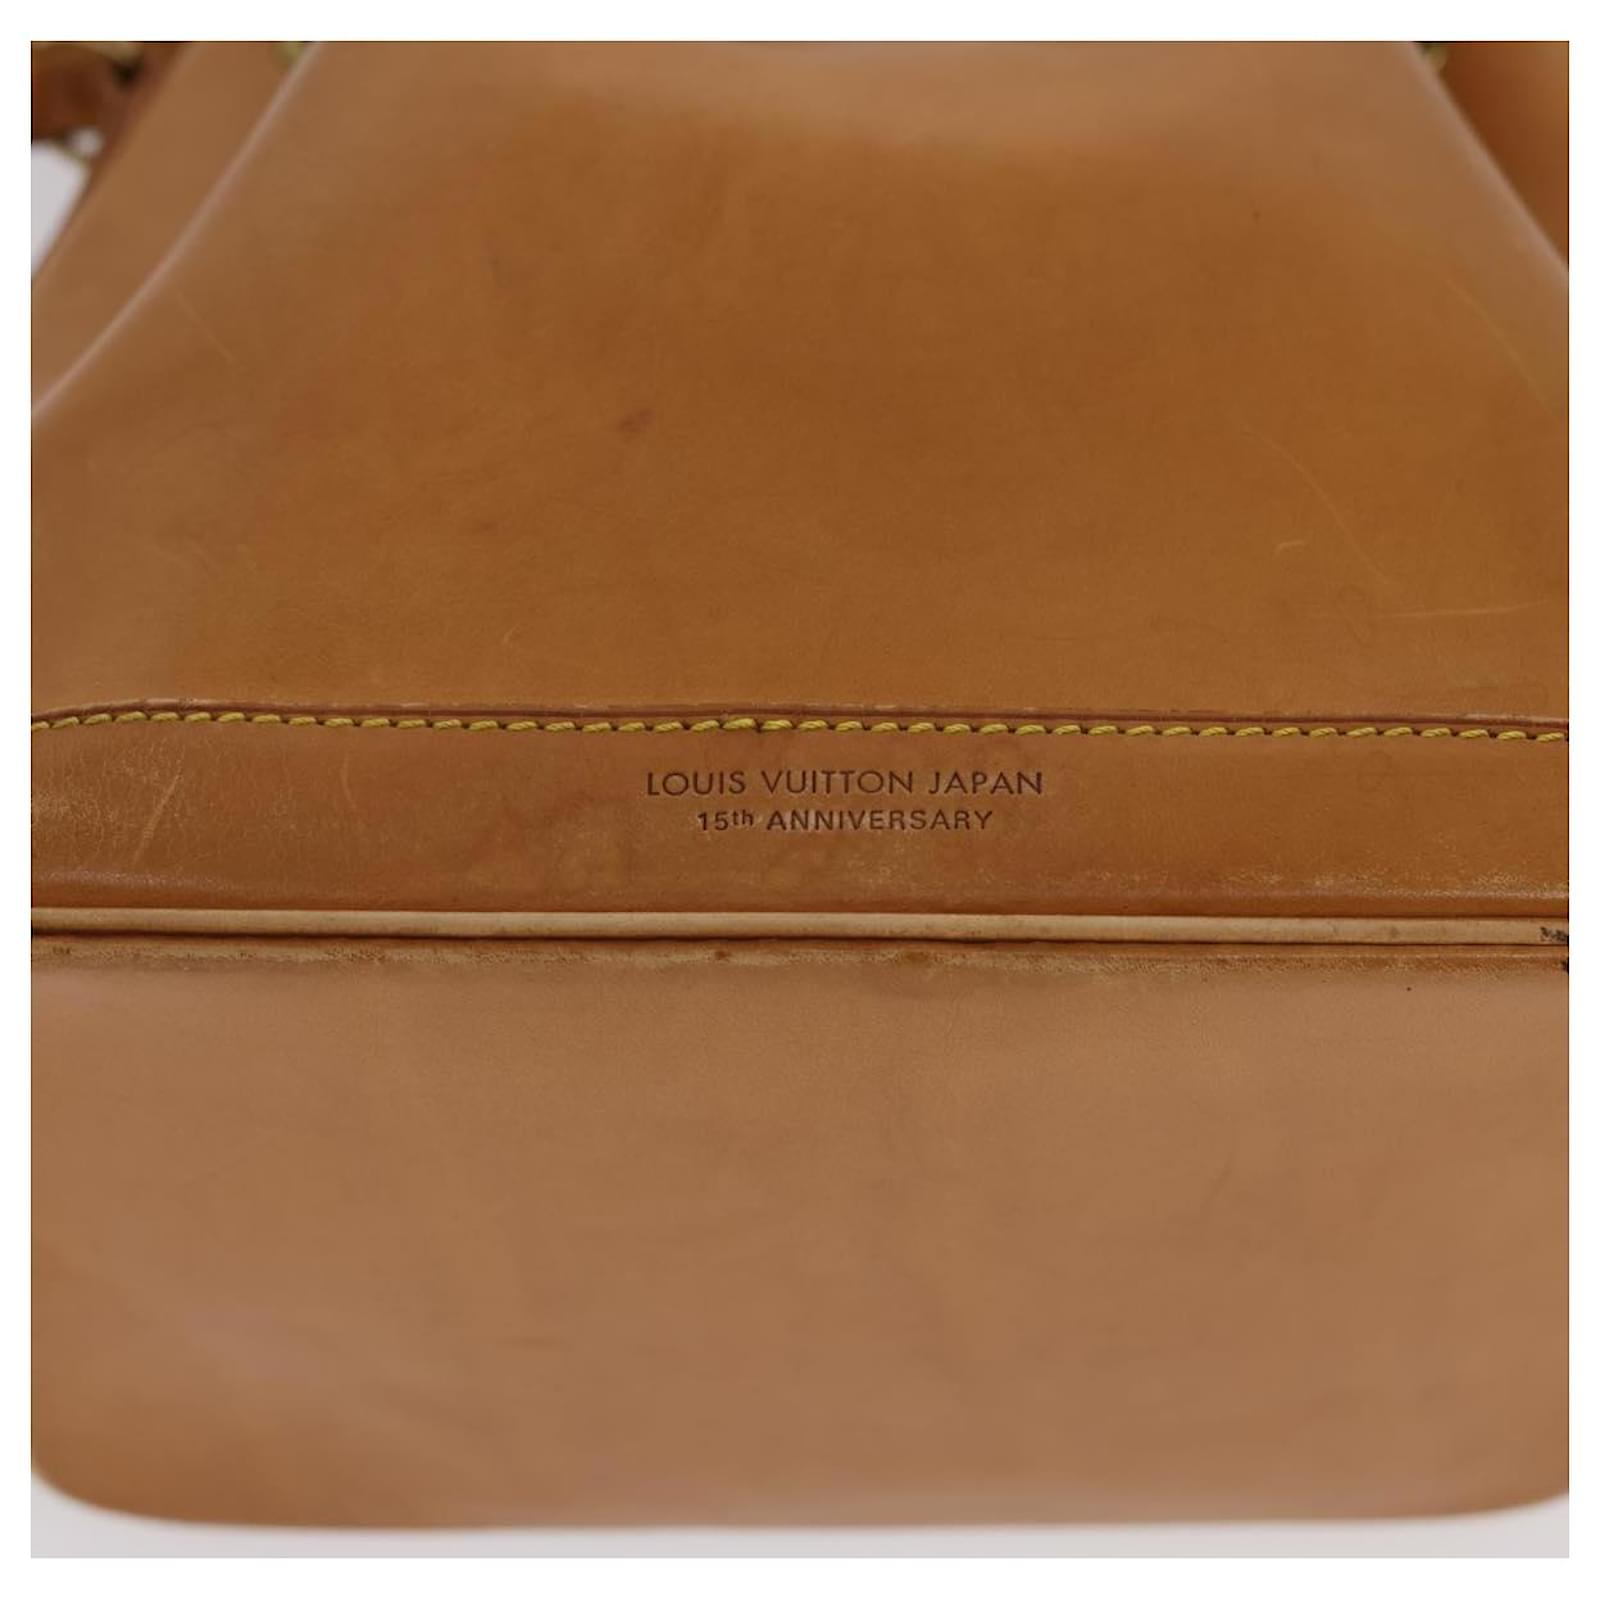 LOUIS VUITTON Nomad leather Petit Noe Shoulder Bag 2way Brown M85003 A